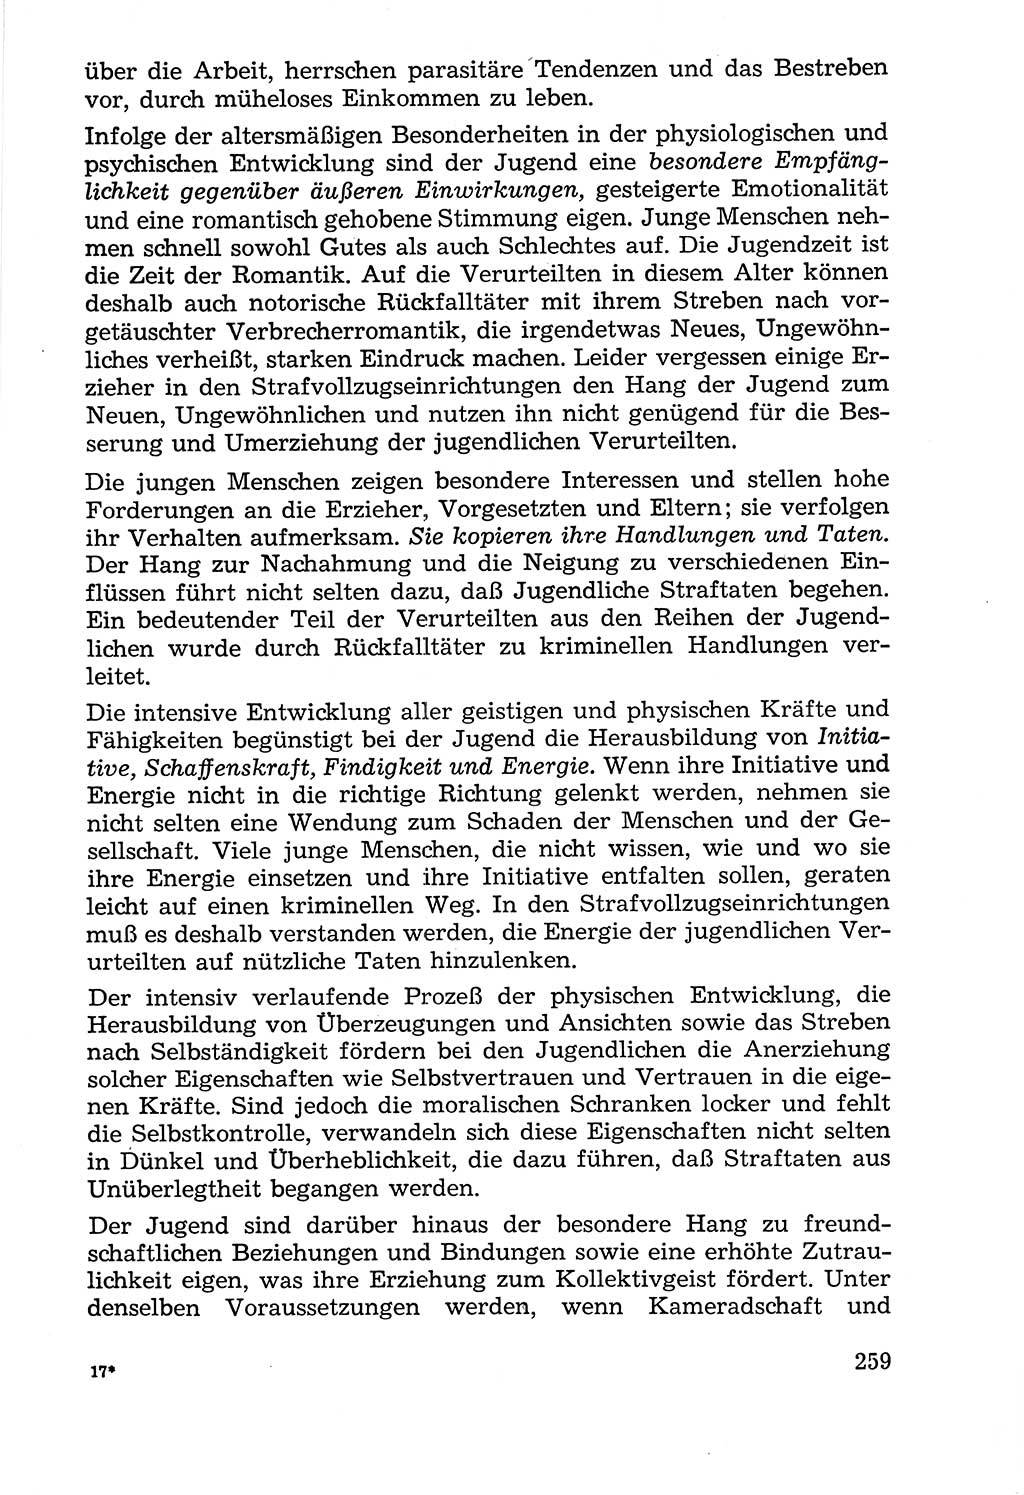 Lehrbuch der Strafvollzugspädagogik [Deutsche Demokratische Republik (DDR)] 1969, Seite 259 (Lb. SV-Pd. DDR 1969, S. 259)